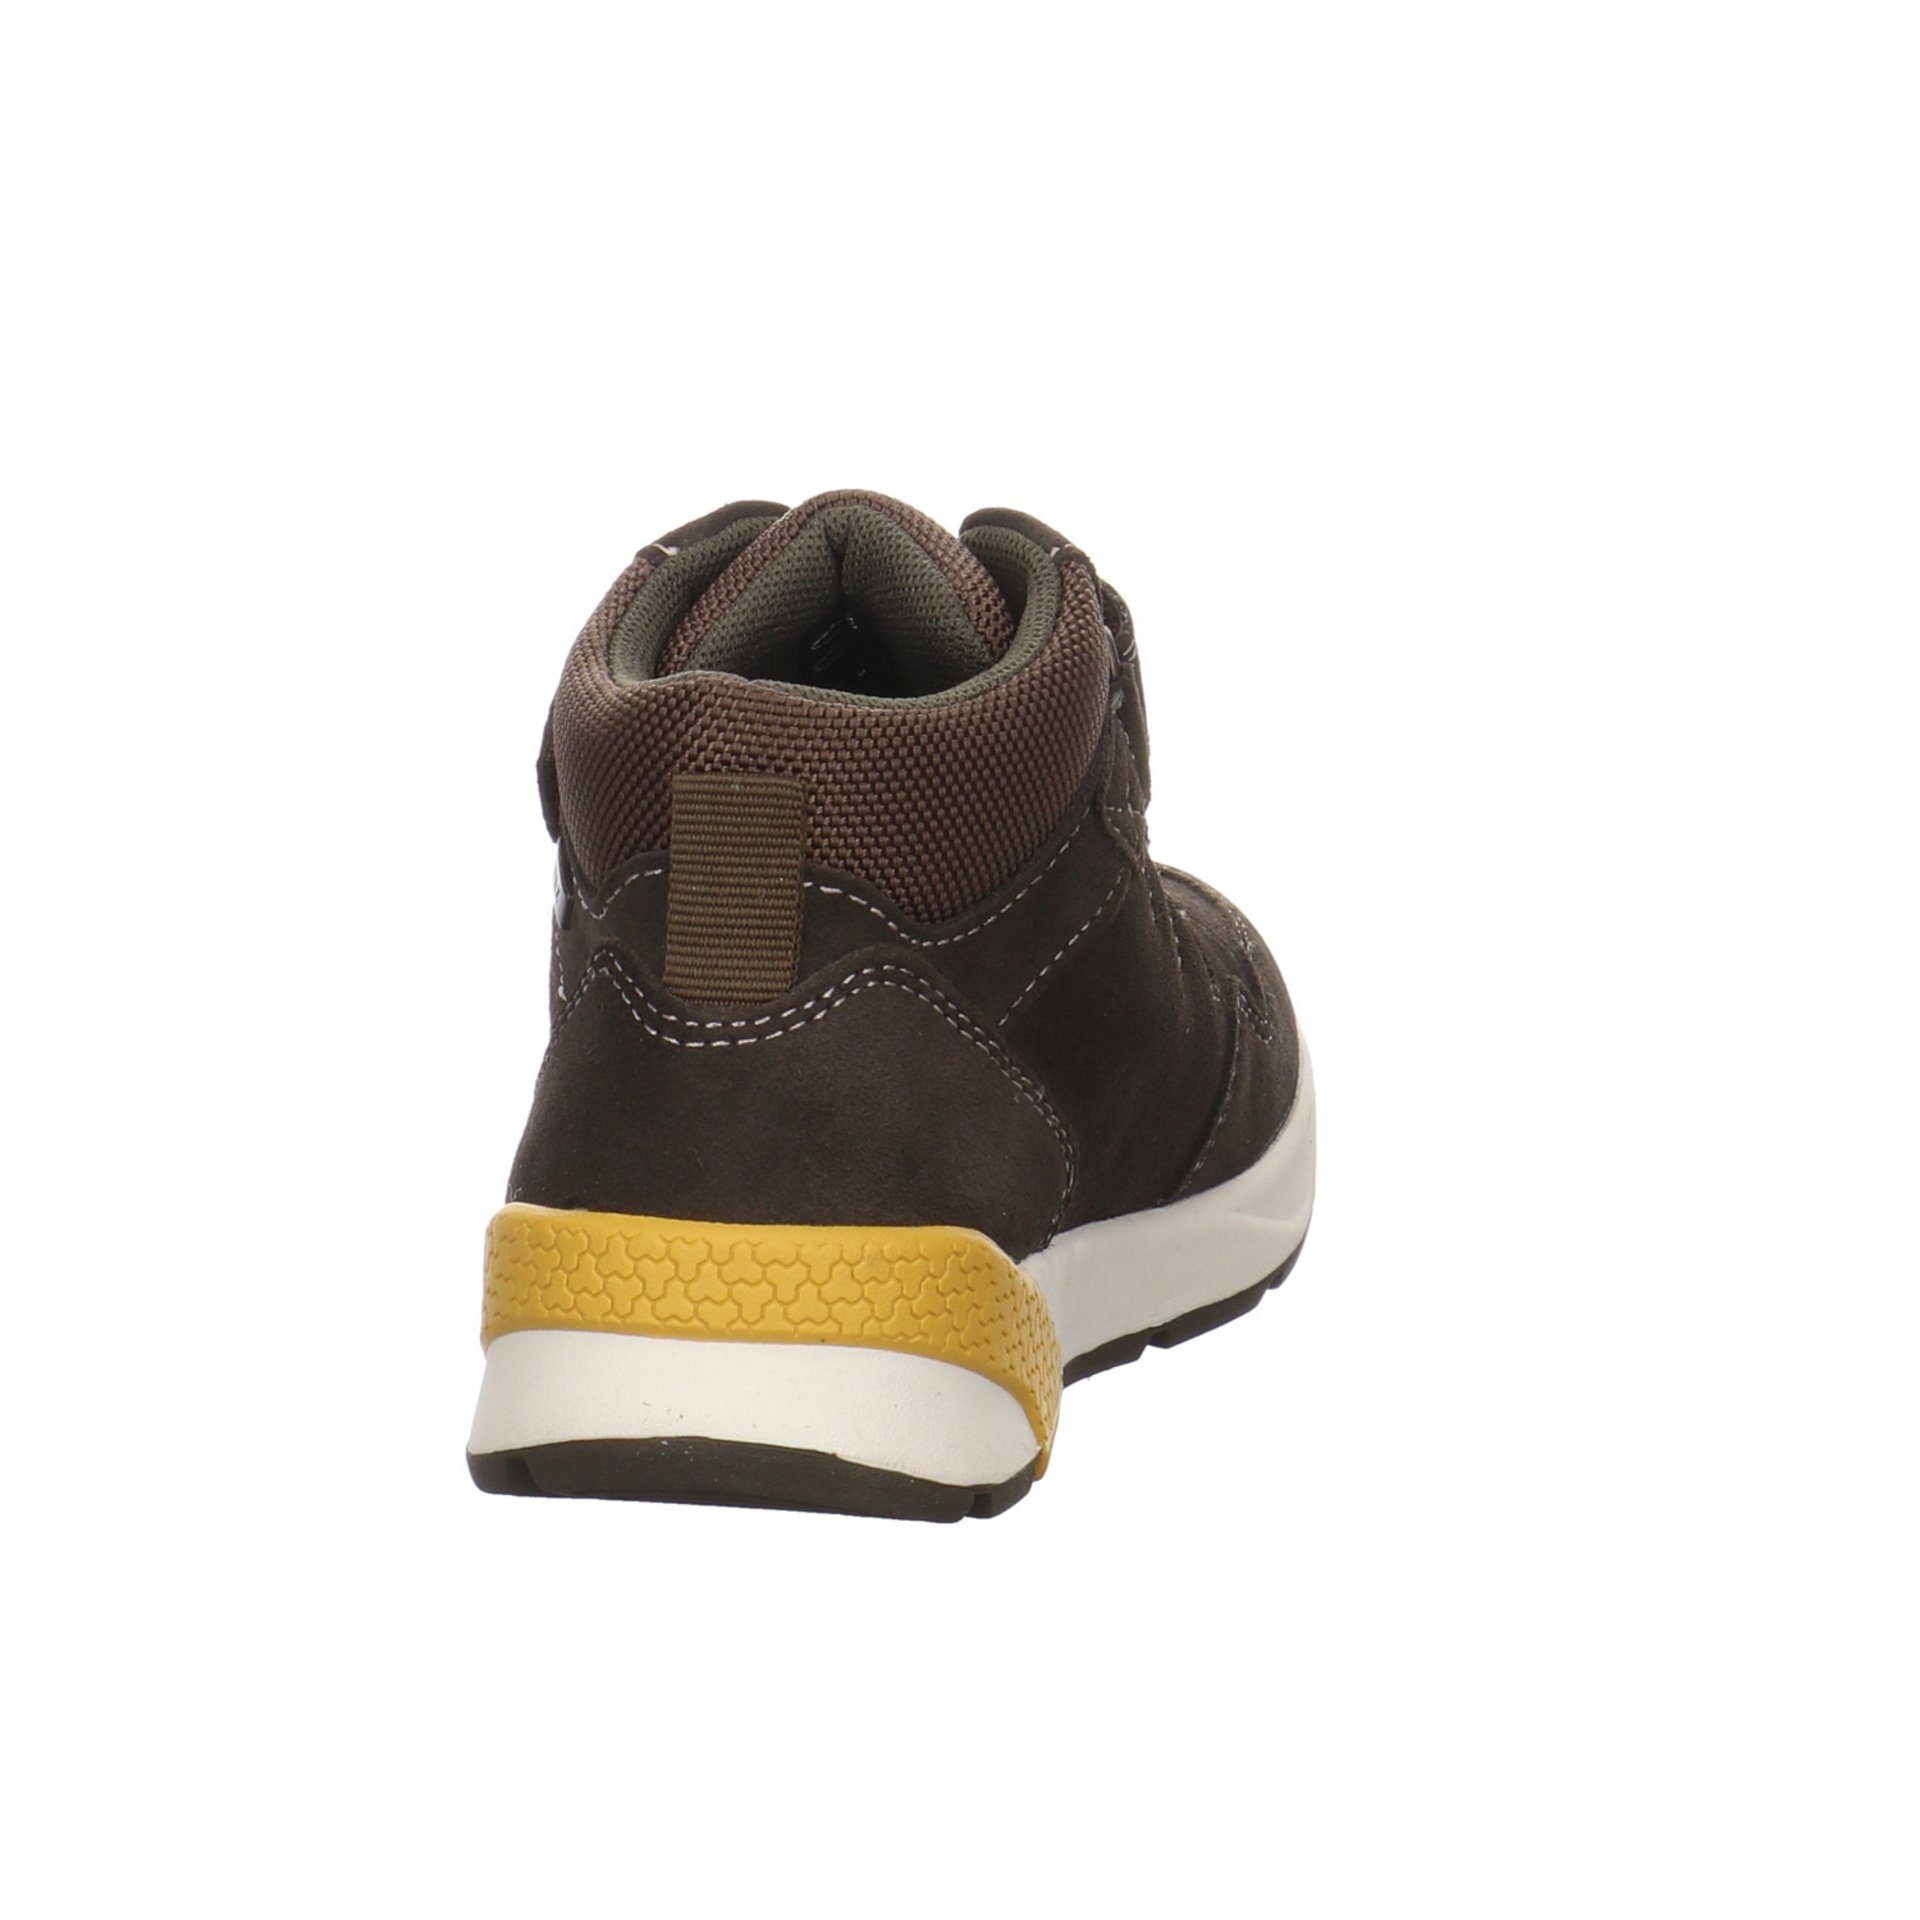 grün Jungen Schnürhalbschuhe Ronald-Tex 049296 Lurchi Sneaker Leder-/Textilkombination Boots